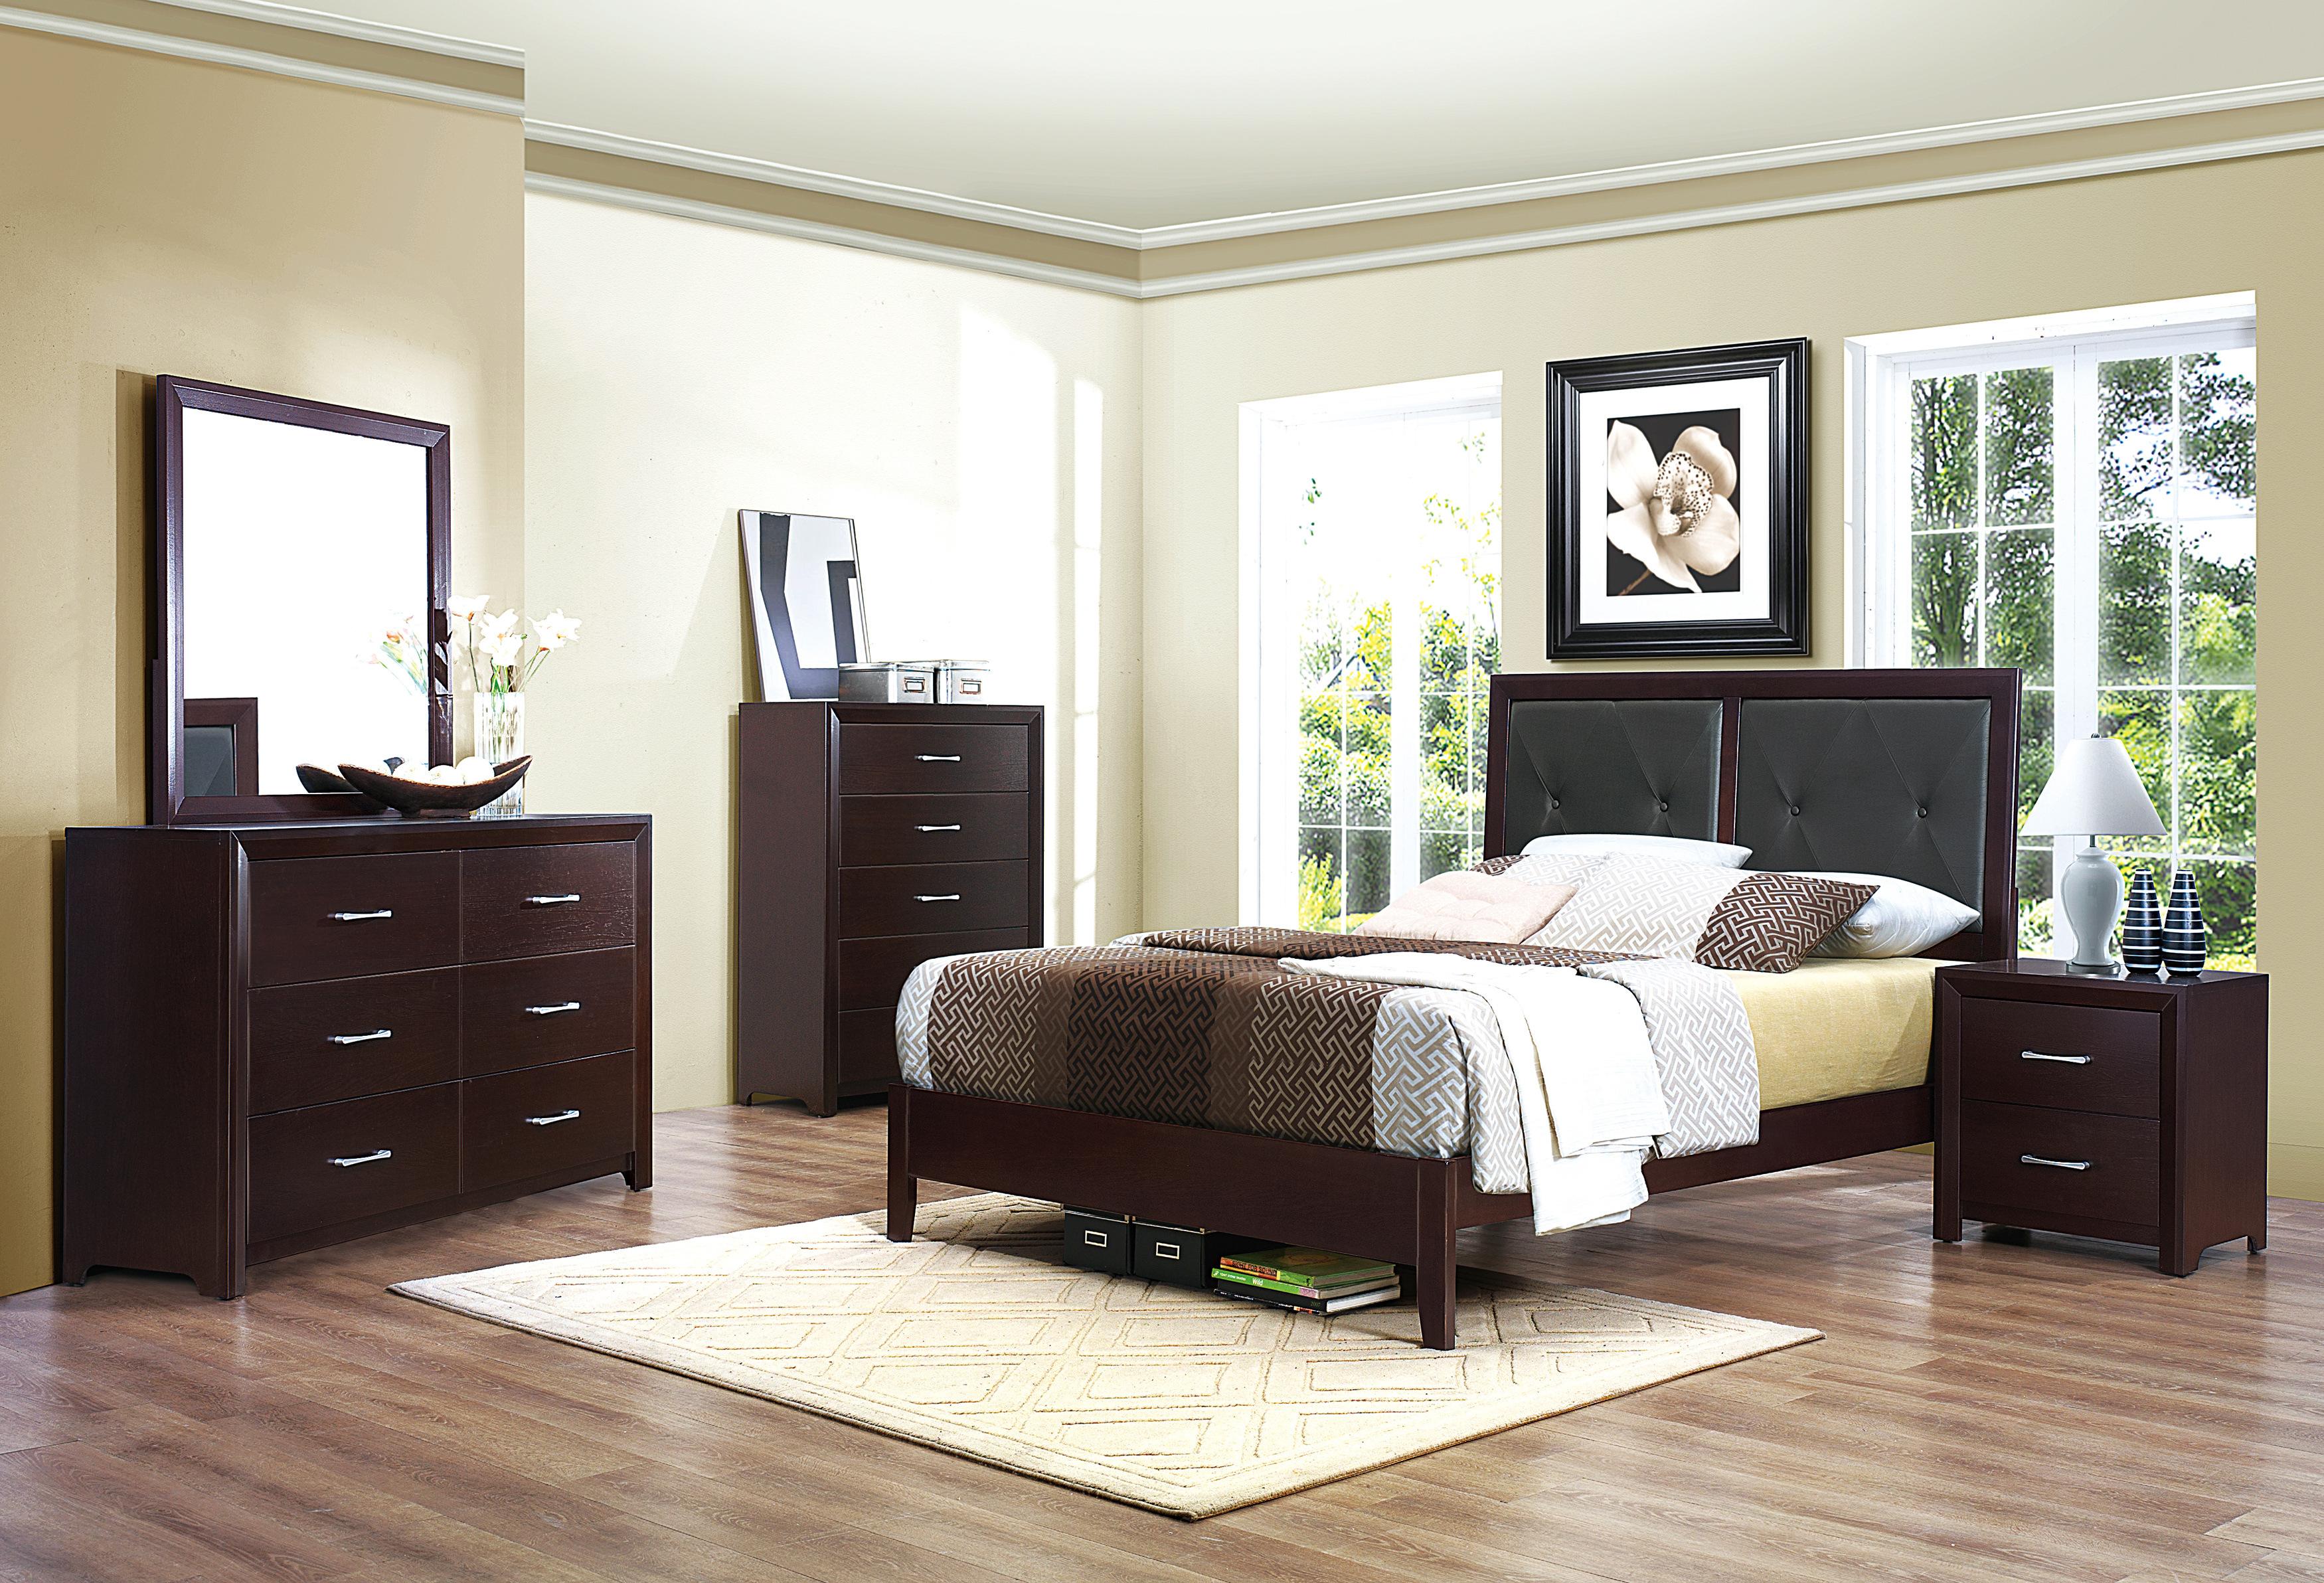 

    
Contemporary Espresso Wood Queen Bedroom Set 5pcs Homelegance 2145-1* Edina
